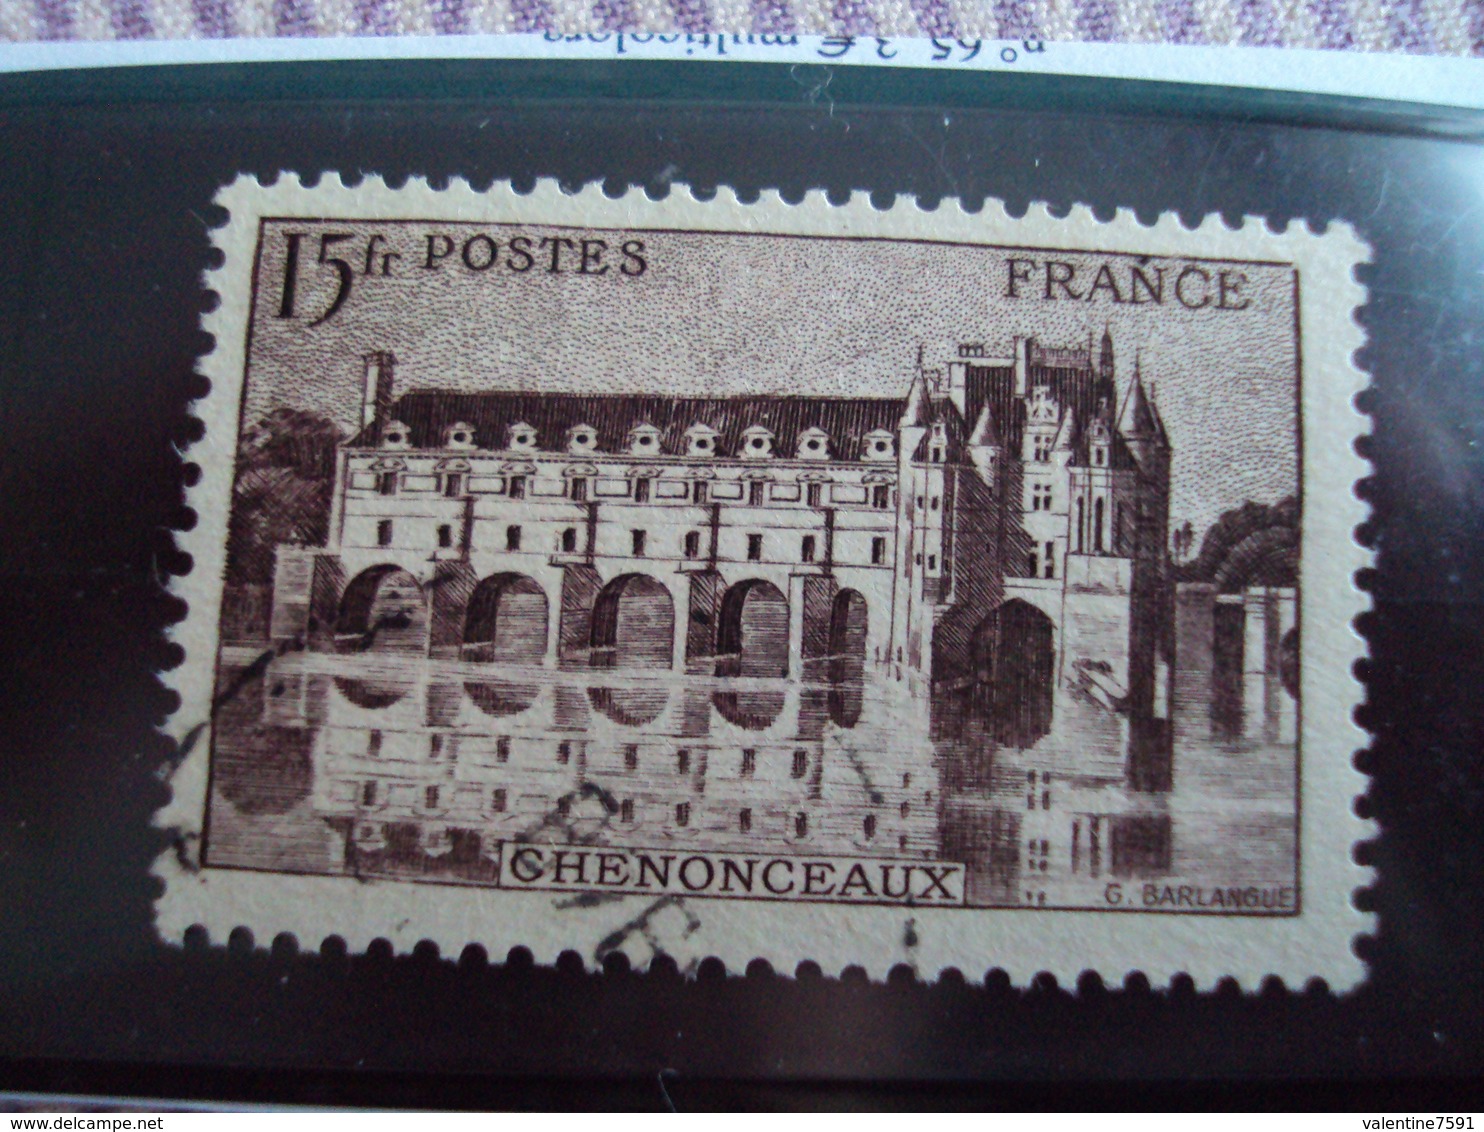 1900-1945-timbre Oblitéré N° 610  Brin Lilas-    "  Chenonceaux  15 F"     Cote  0.65      Net 0.20 - Oblitérés